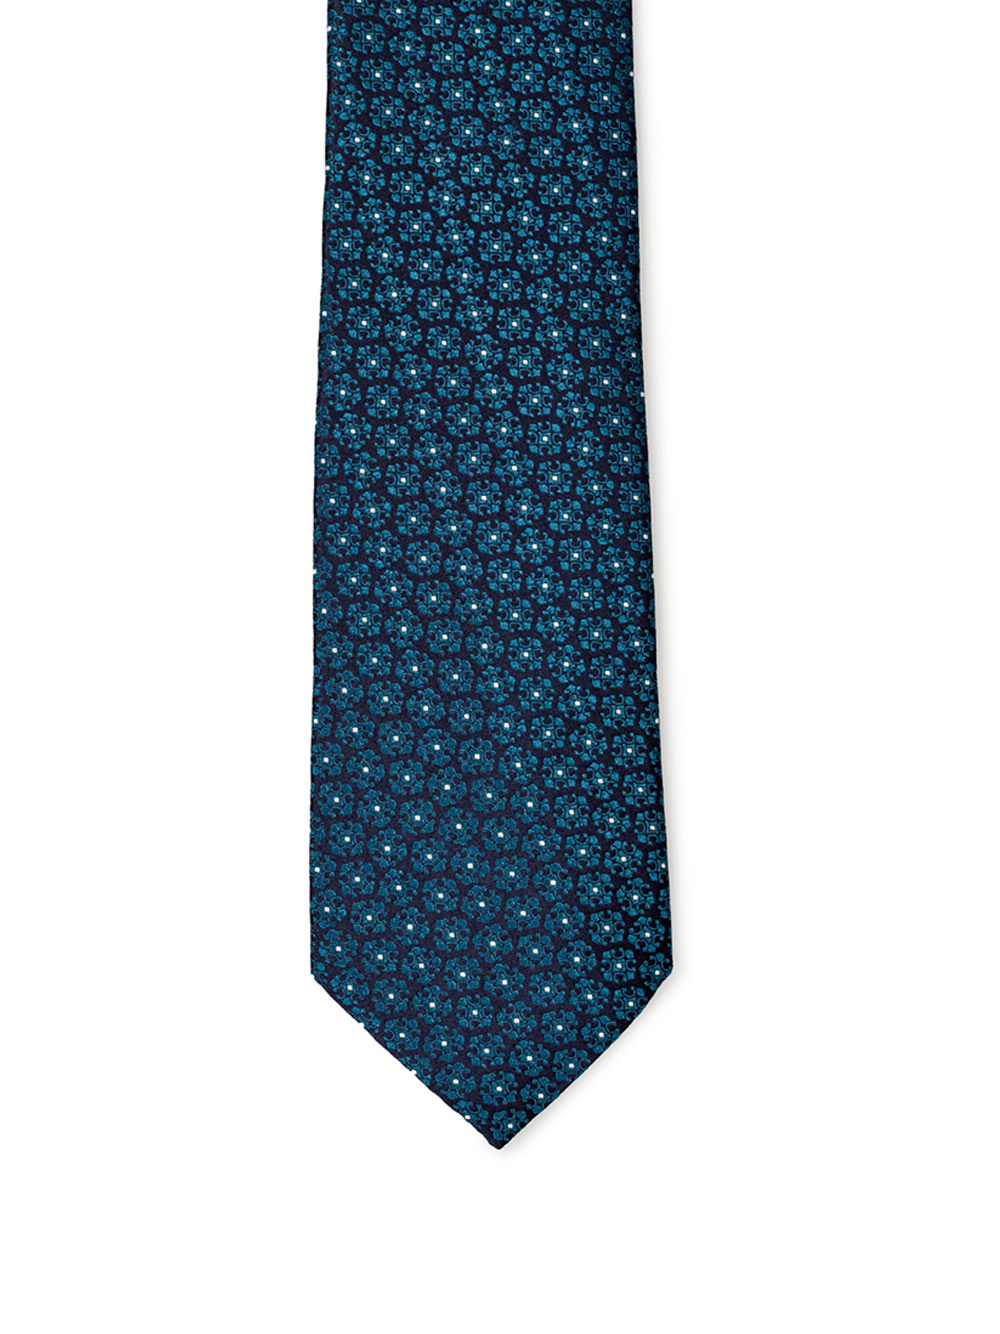 Oil Blue Printed Silk Tie